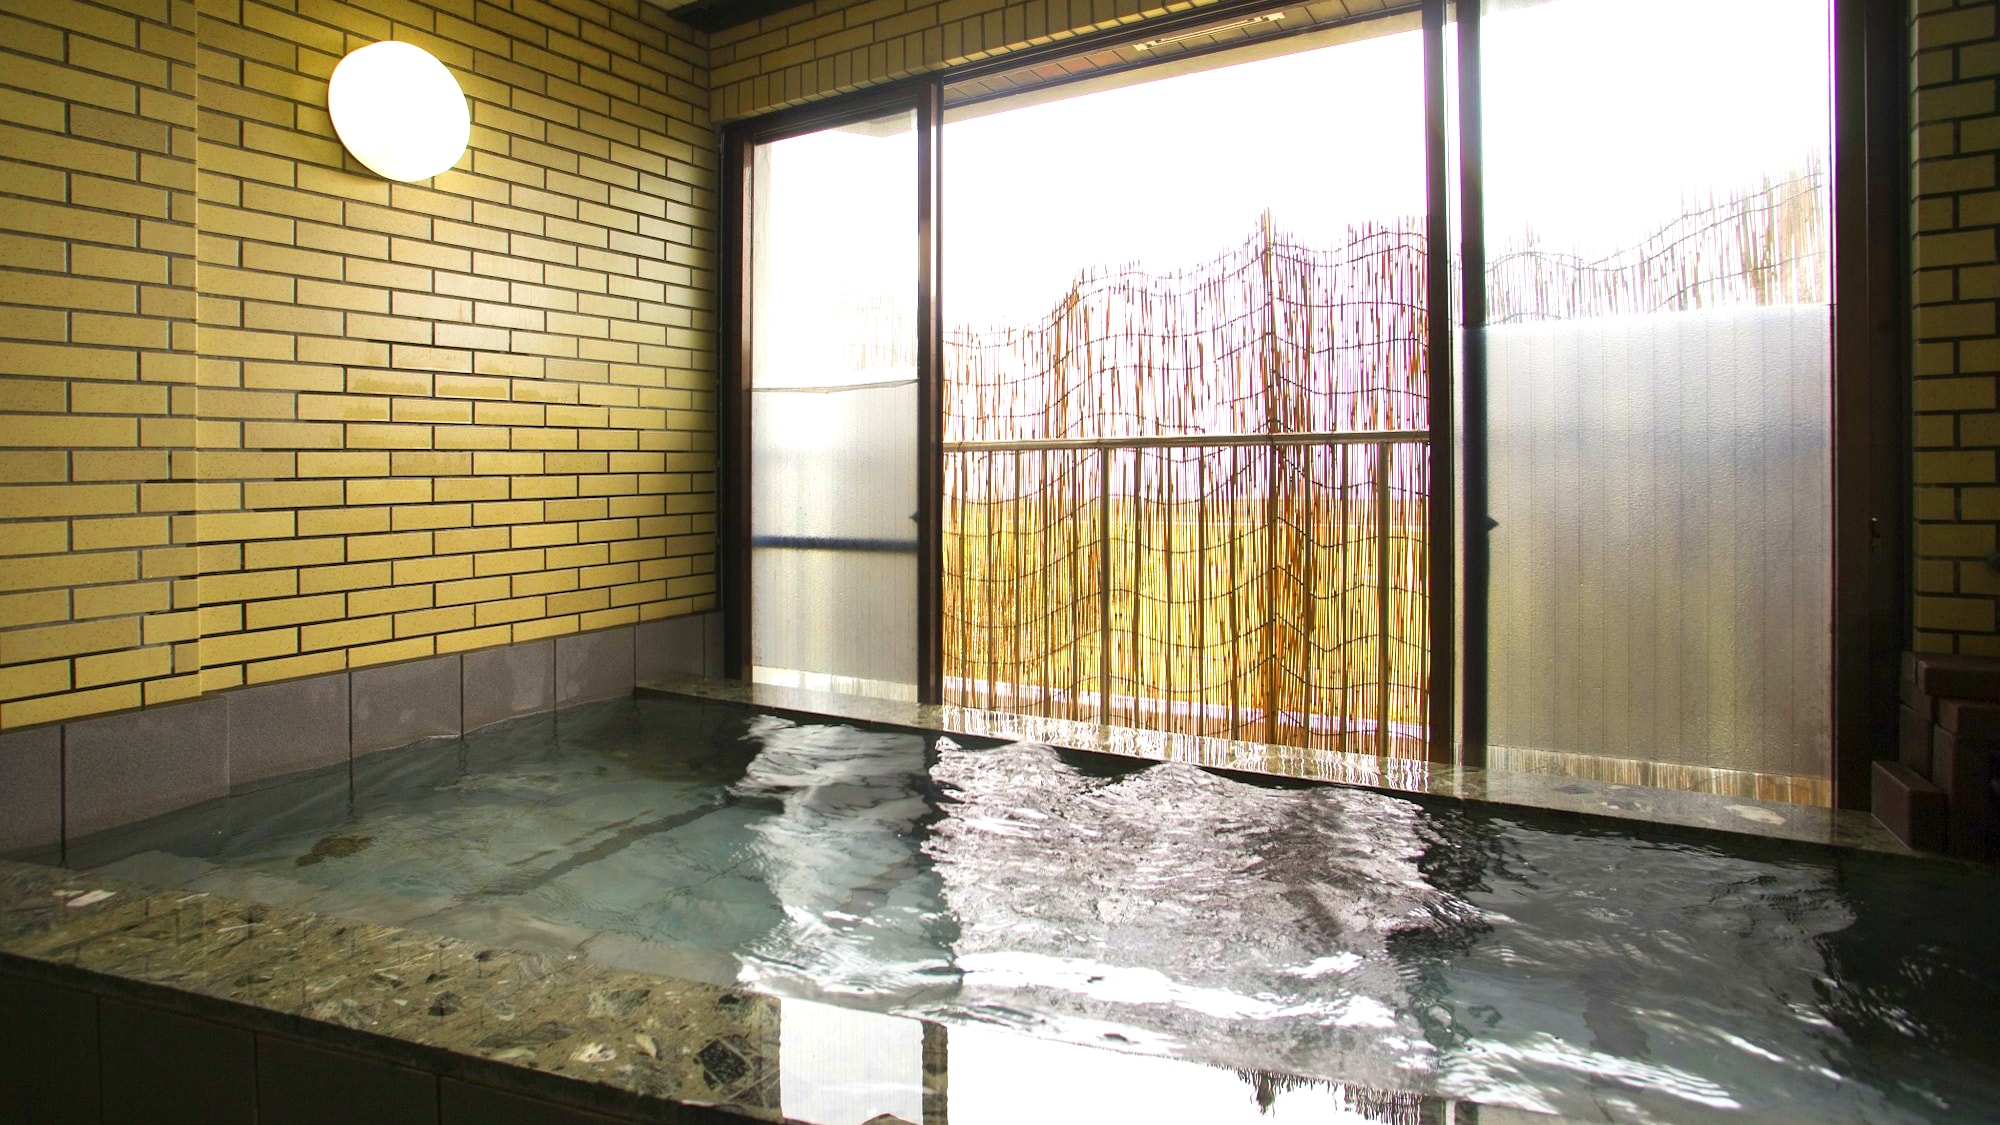 ห้องอาบน้ำรวมขนาดใหญ่ที่คุณสามารถอาบน้ำพร้อมชมทะเลญี่ปุ่นอันงดงามได้ แม้ว่าจะมีขนาดไม่ใหญ่นัก